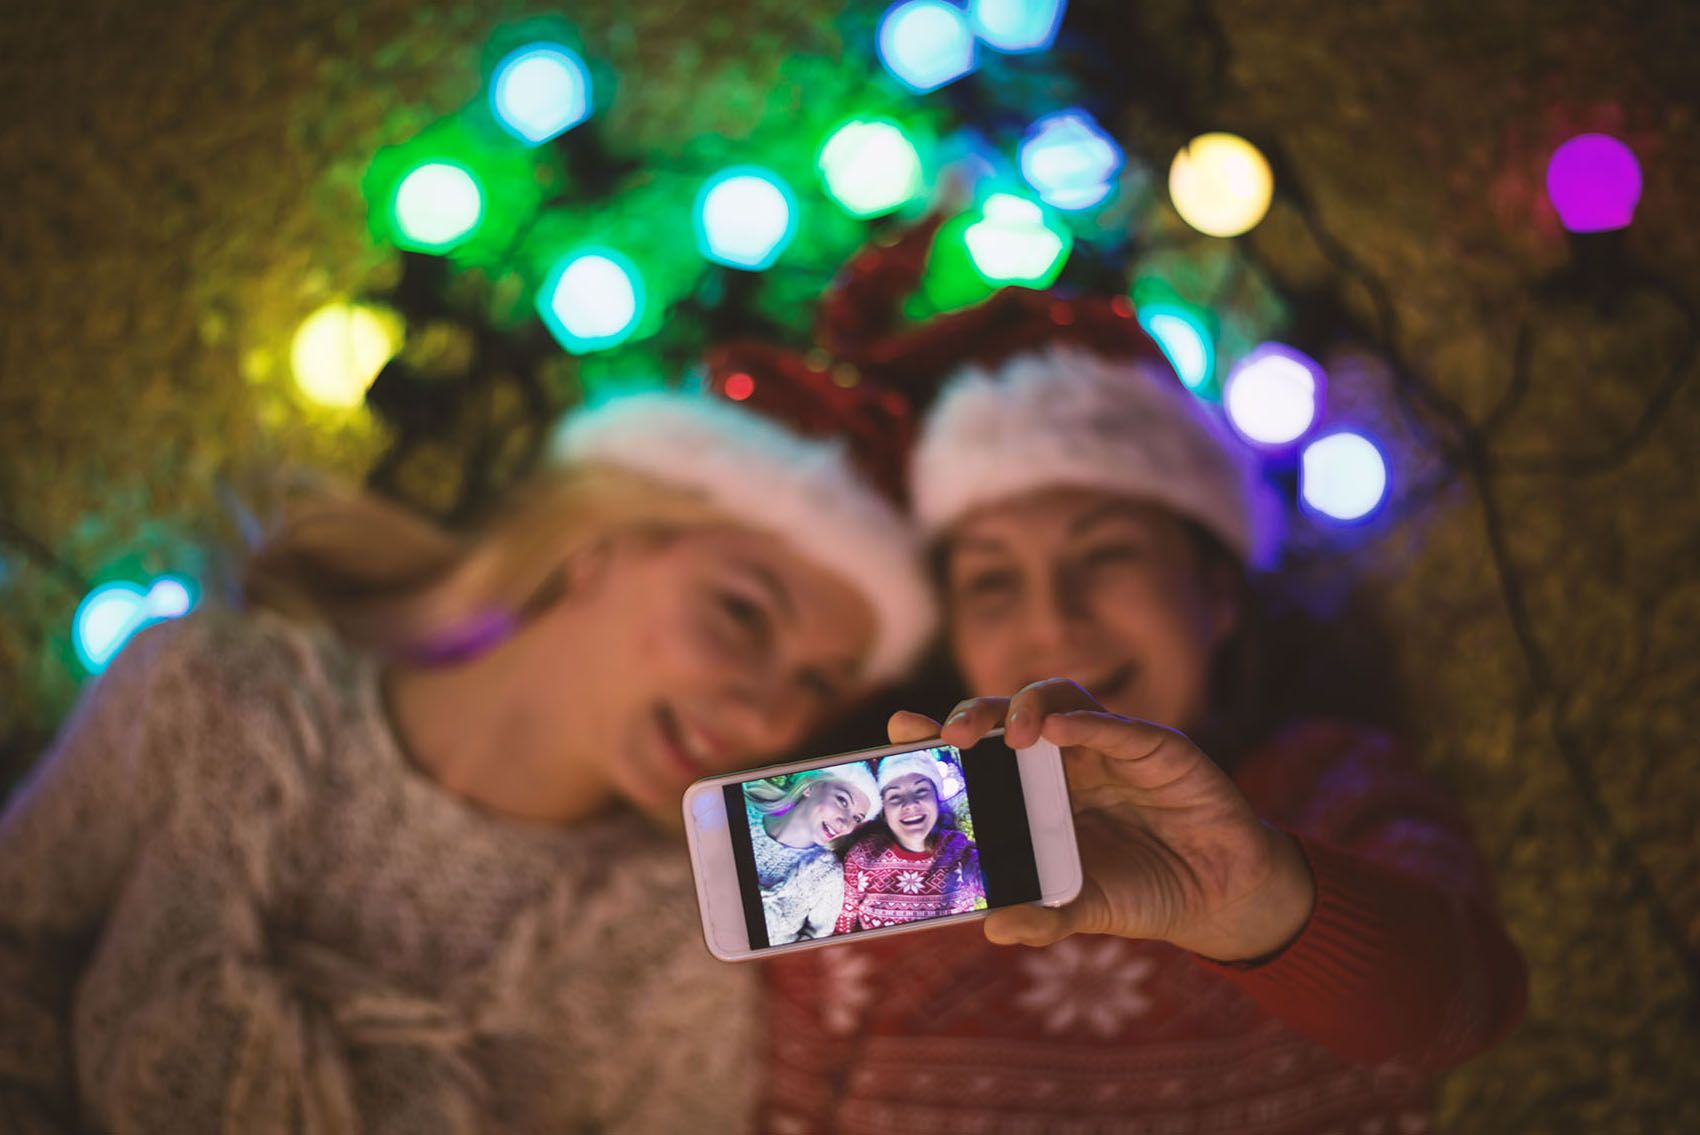 Două fete care își fac selfie-ul de vacanță cu telefonul inteligent împotriva luminilor colorate